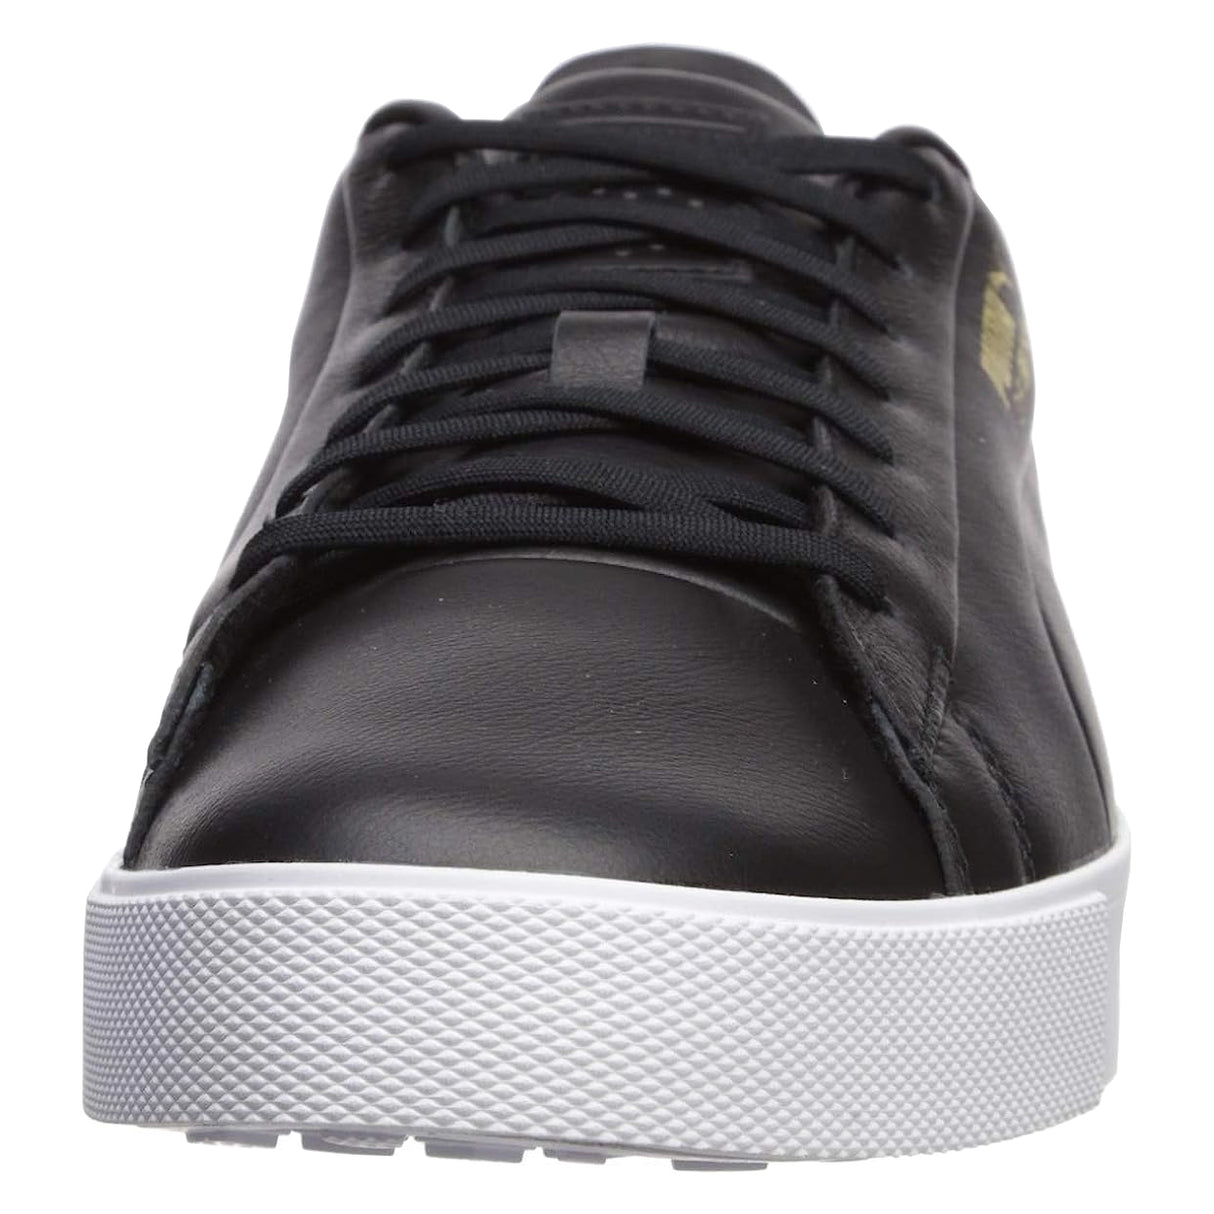 PUMA Men's Original G Spikeless Leather Waterproof Golf Shoe